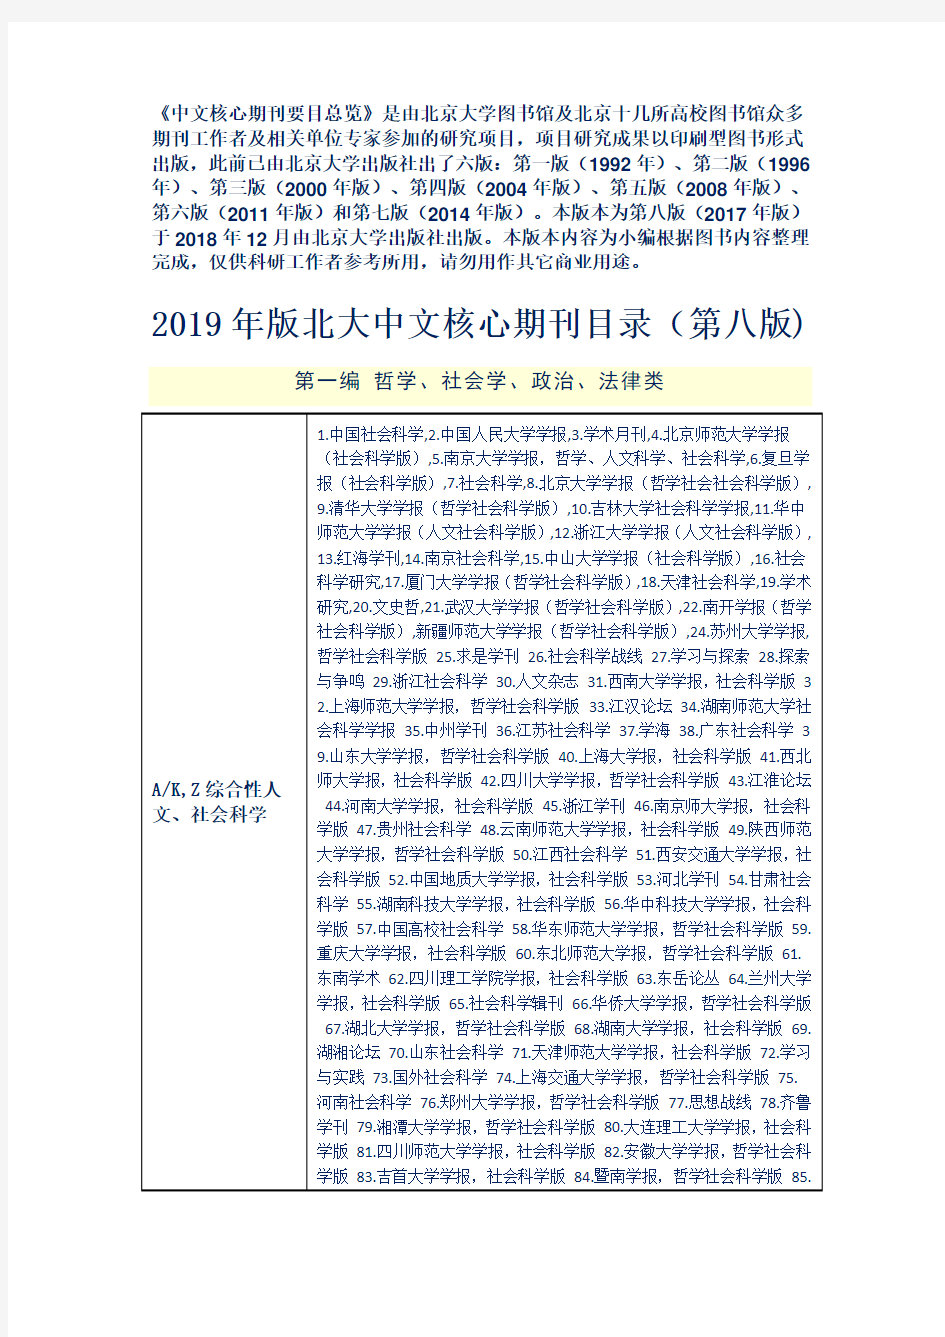 2019年版北大中文核心期刊目录(第八版) -完整版